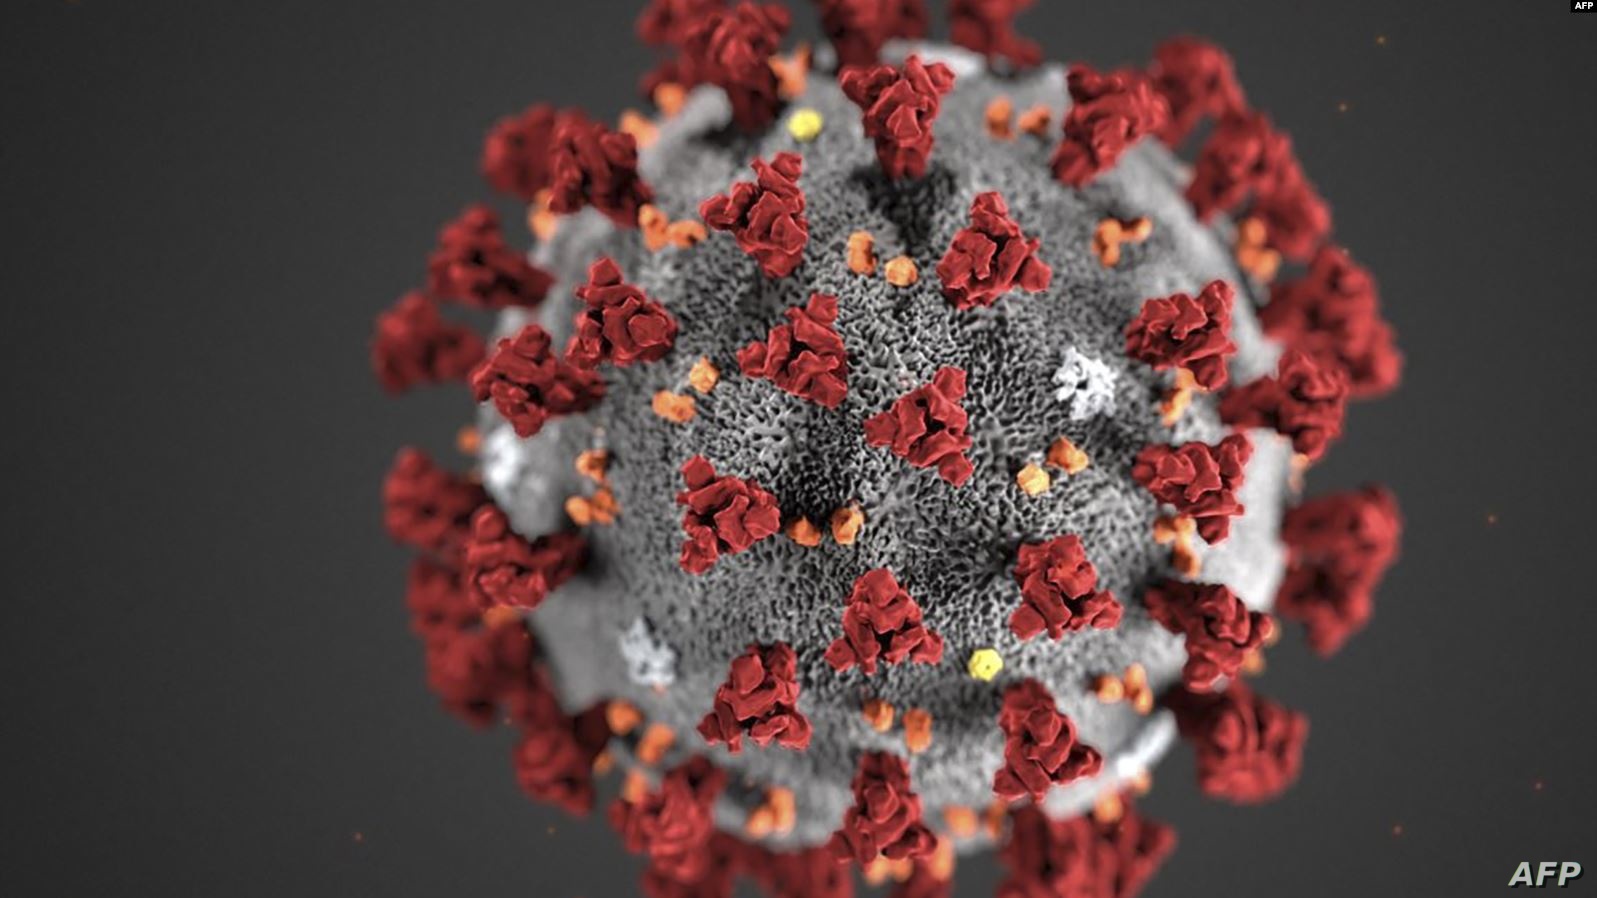   تسجيل أكثر من 4 ملايين و400 ألف حالة شفاء من فيروس كورونا حول العالم